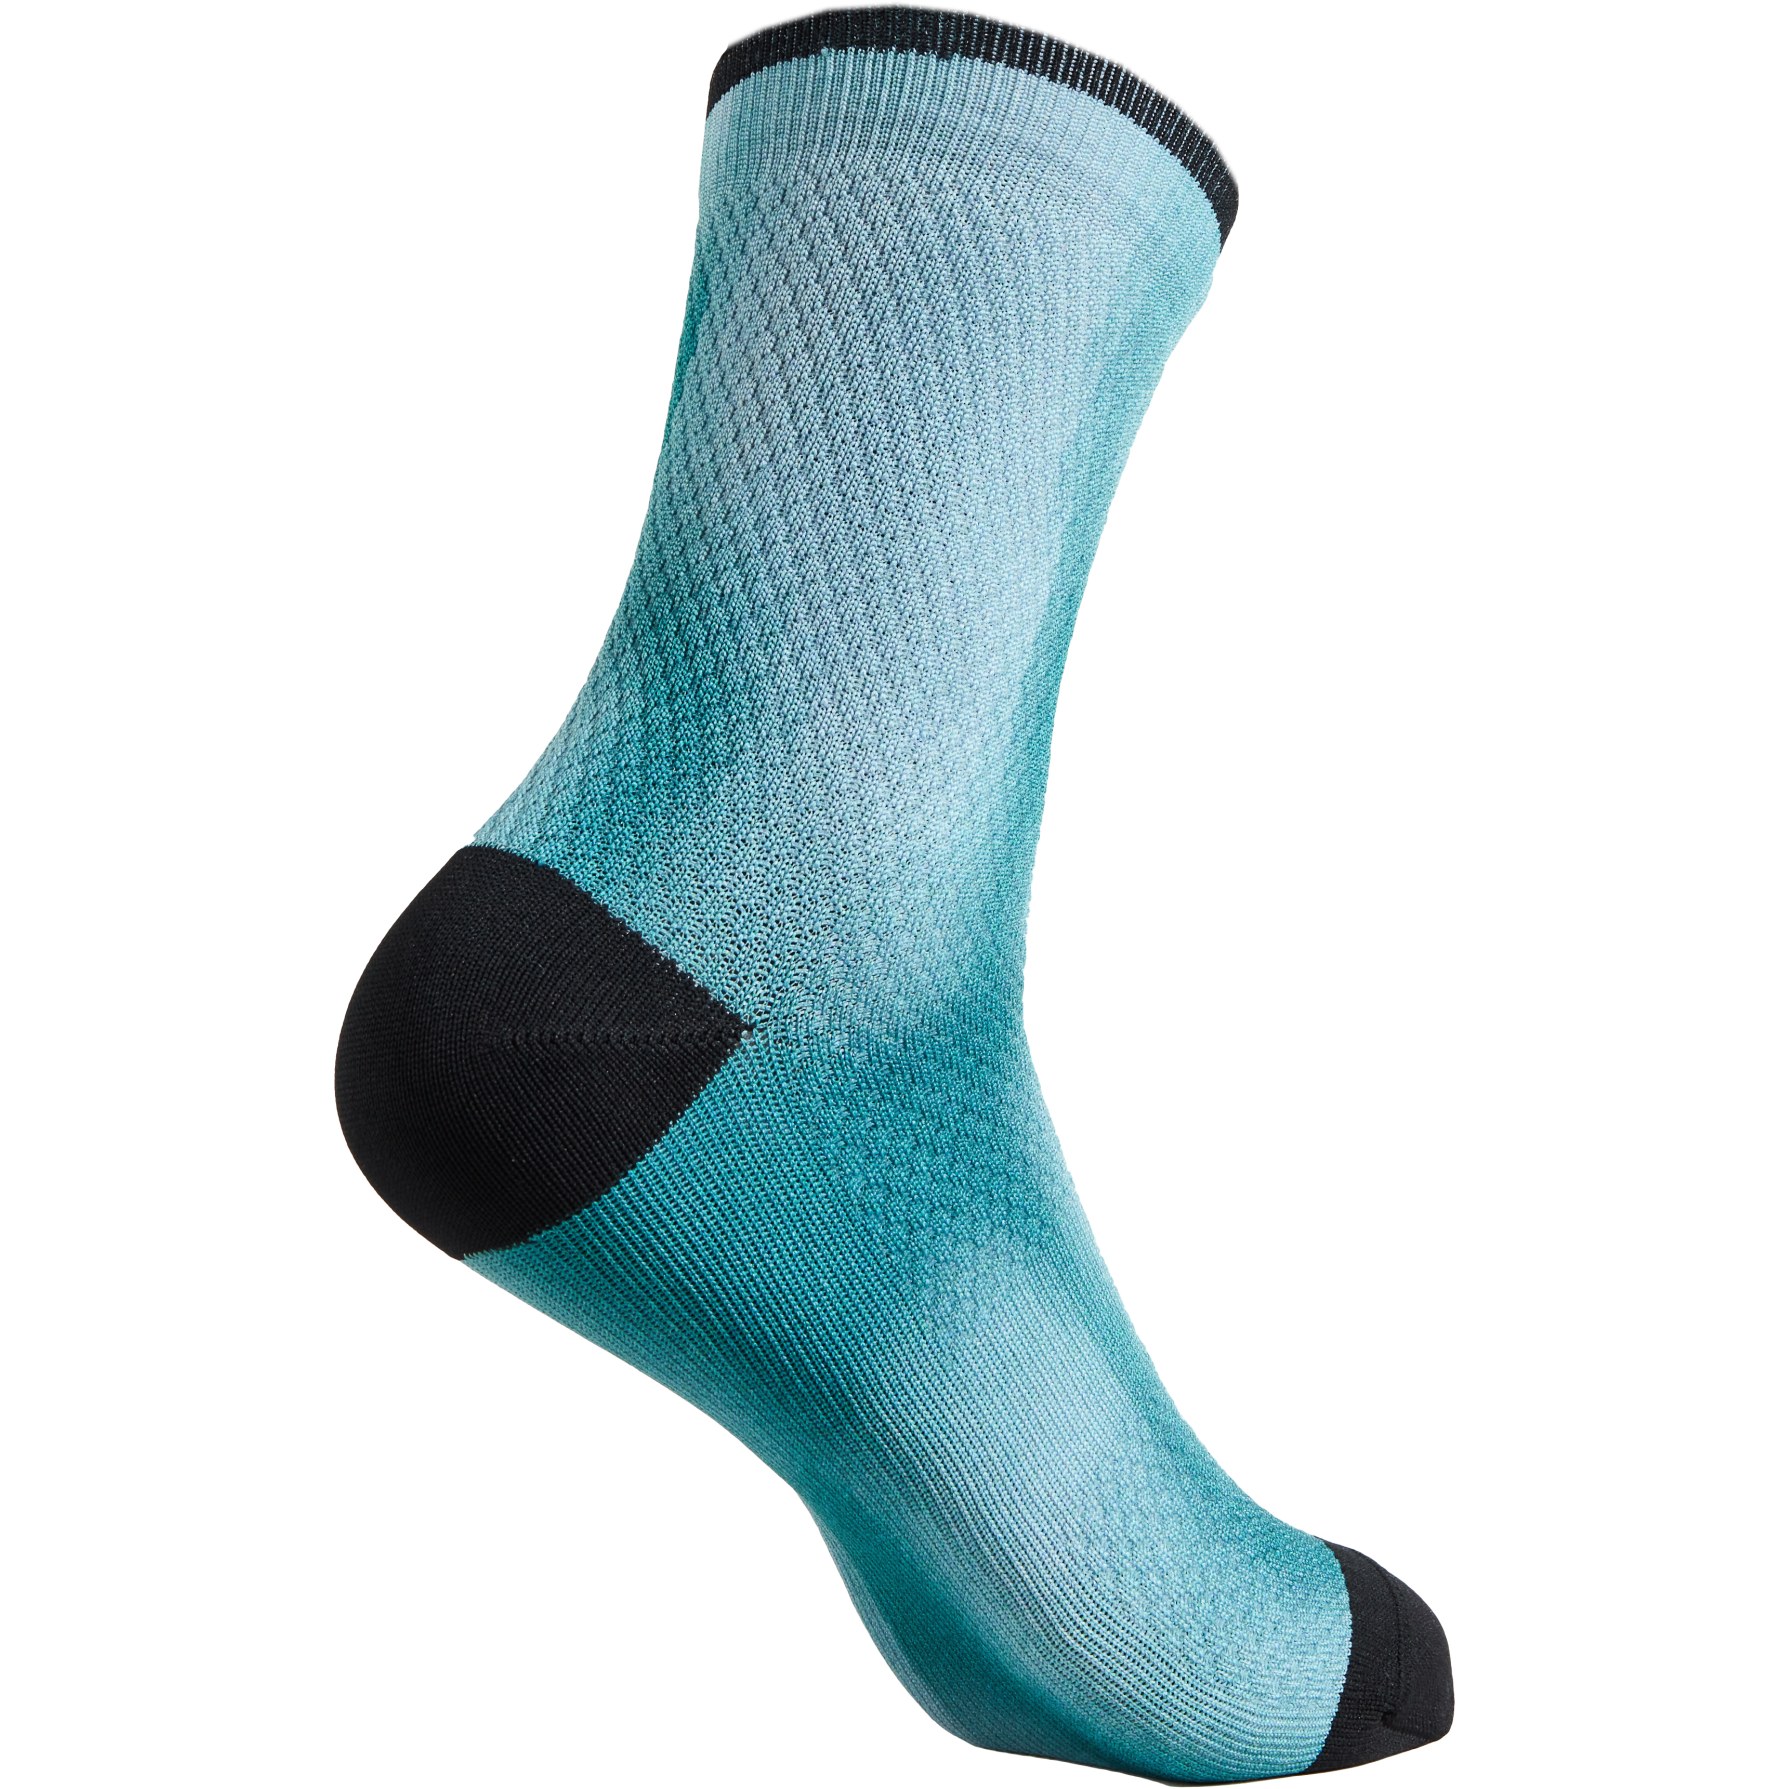 Produktbild von Specialized Soft Air Mid Socken - tropical teal distortion